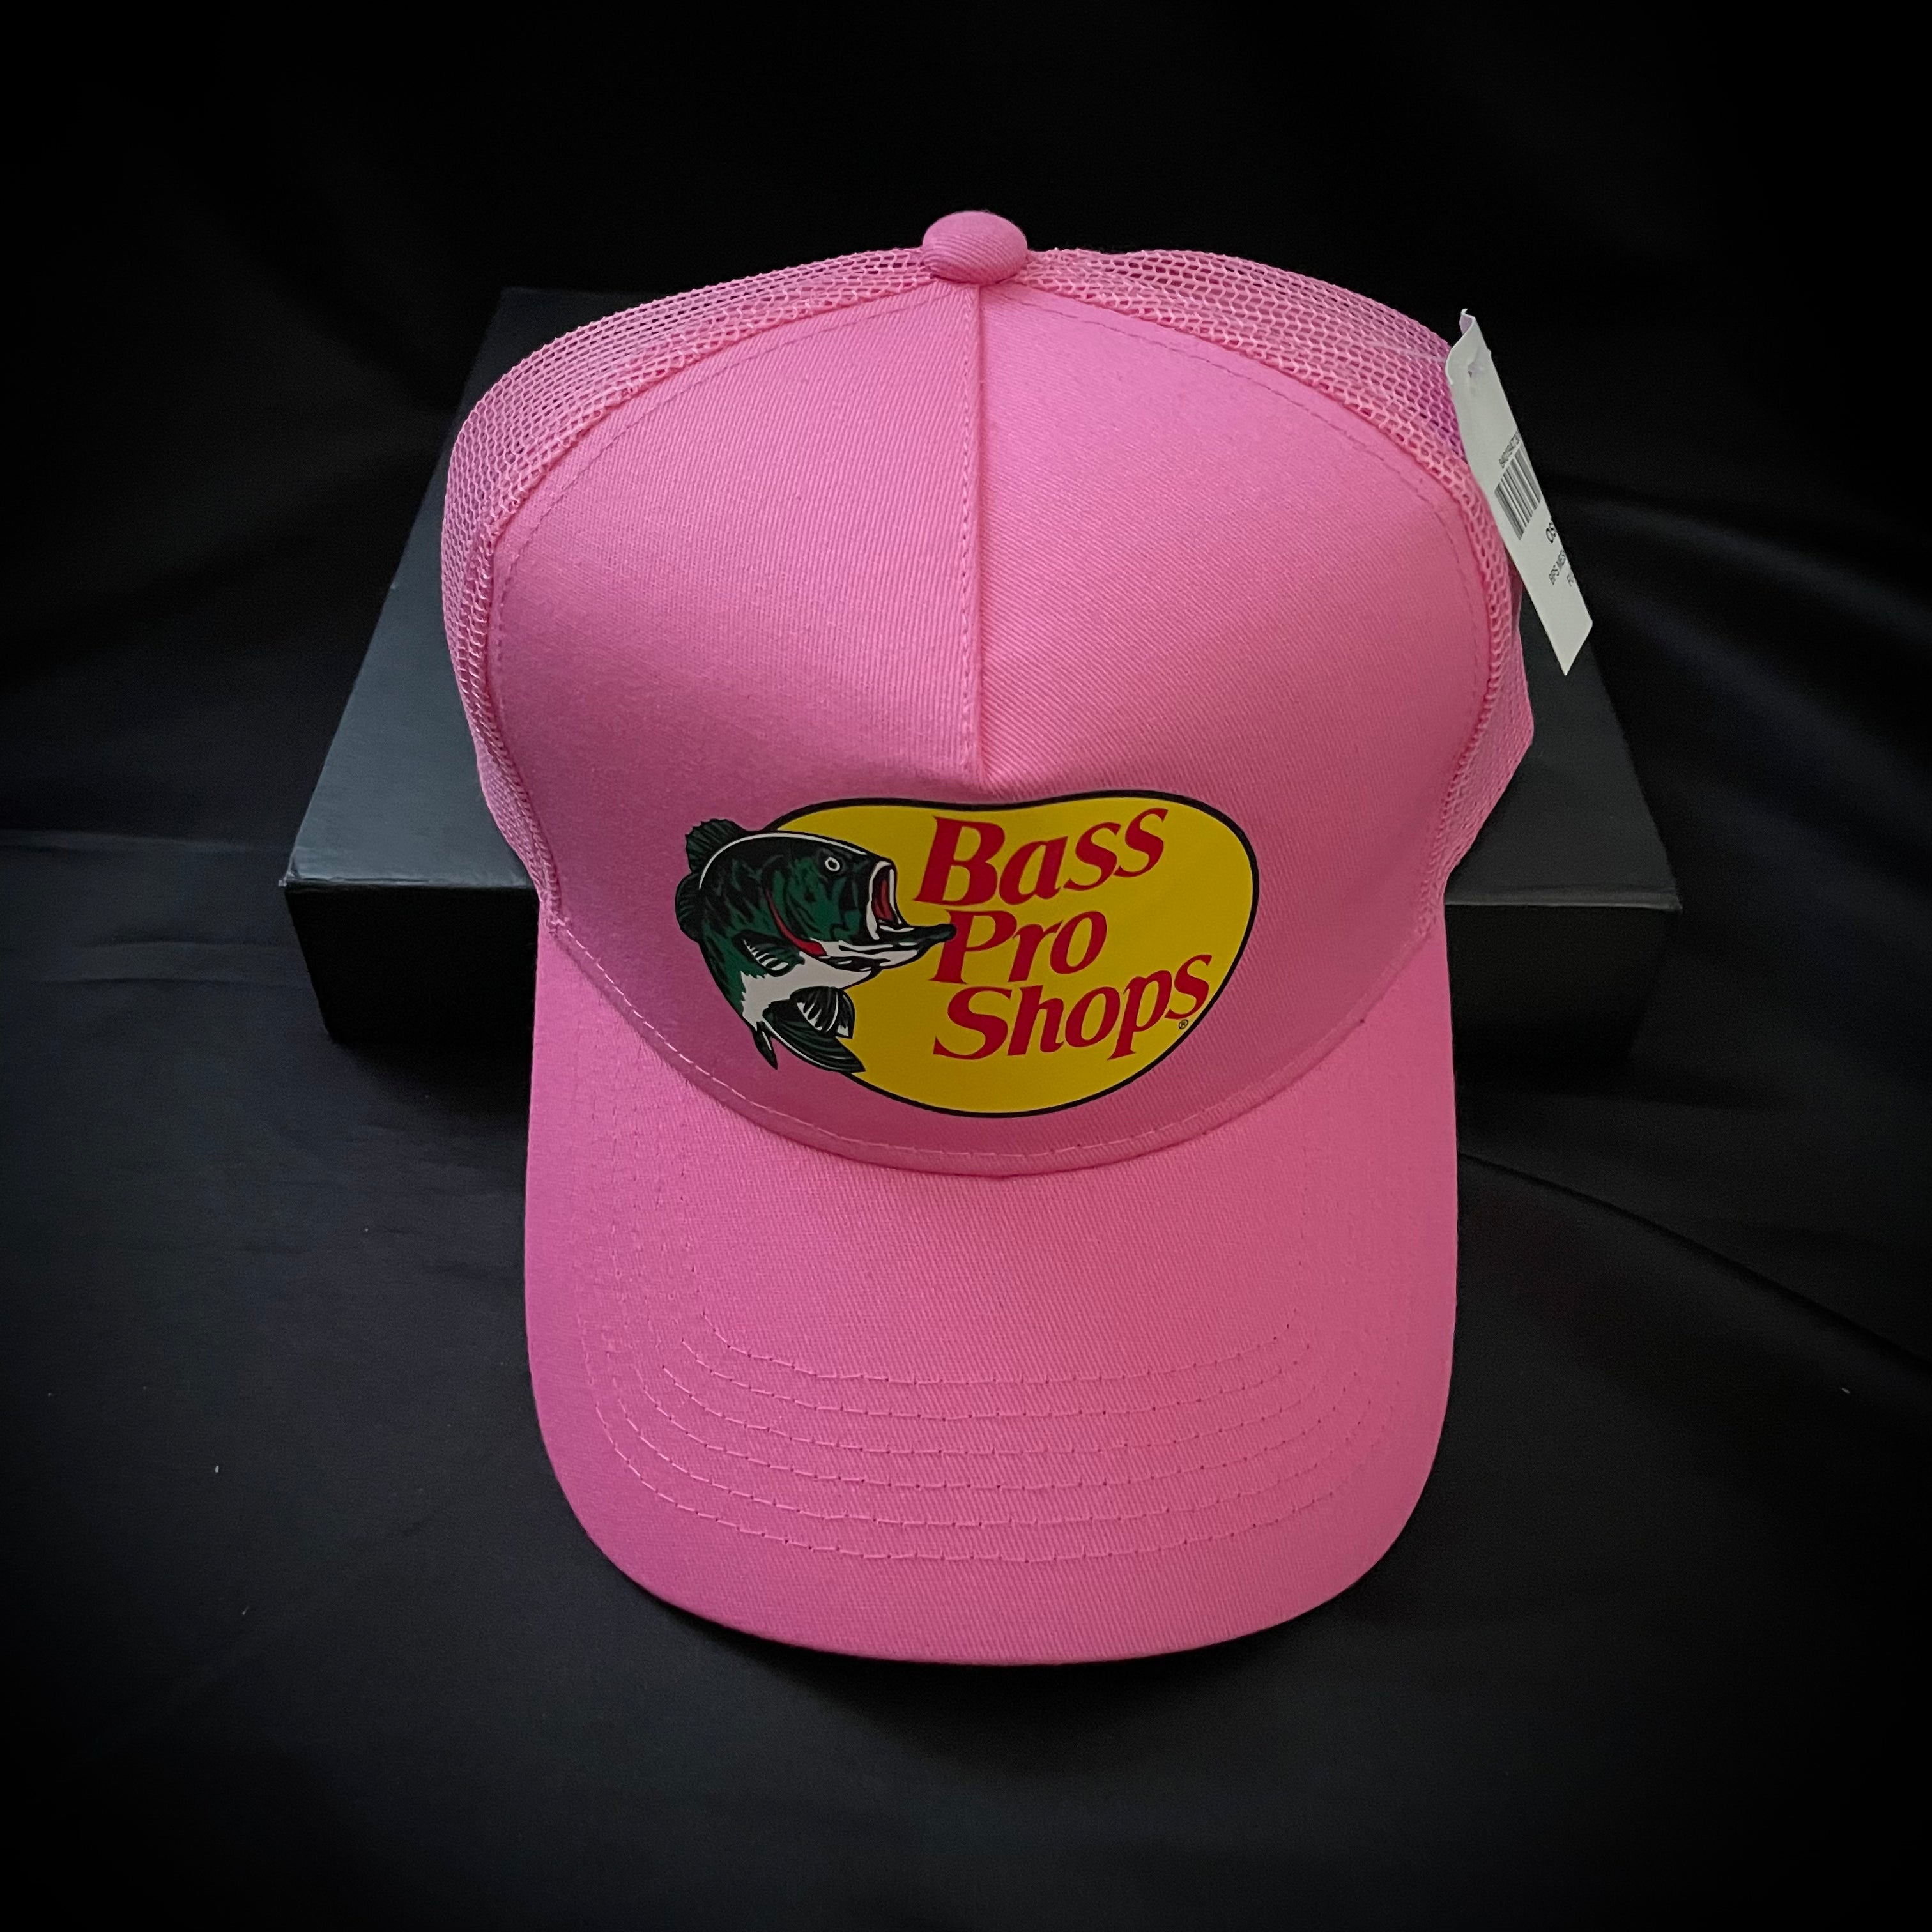 BASS PRO SHOPS Pink Mesh Trucker Cap